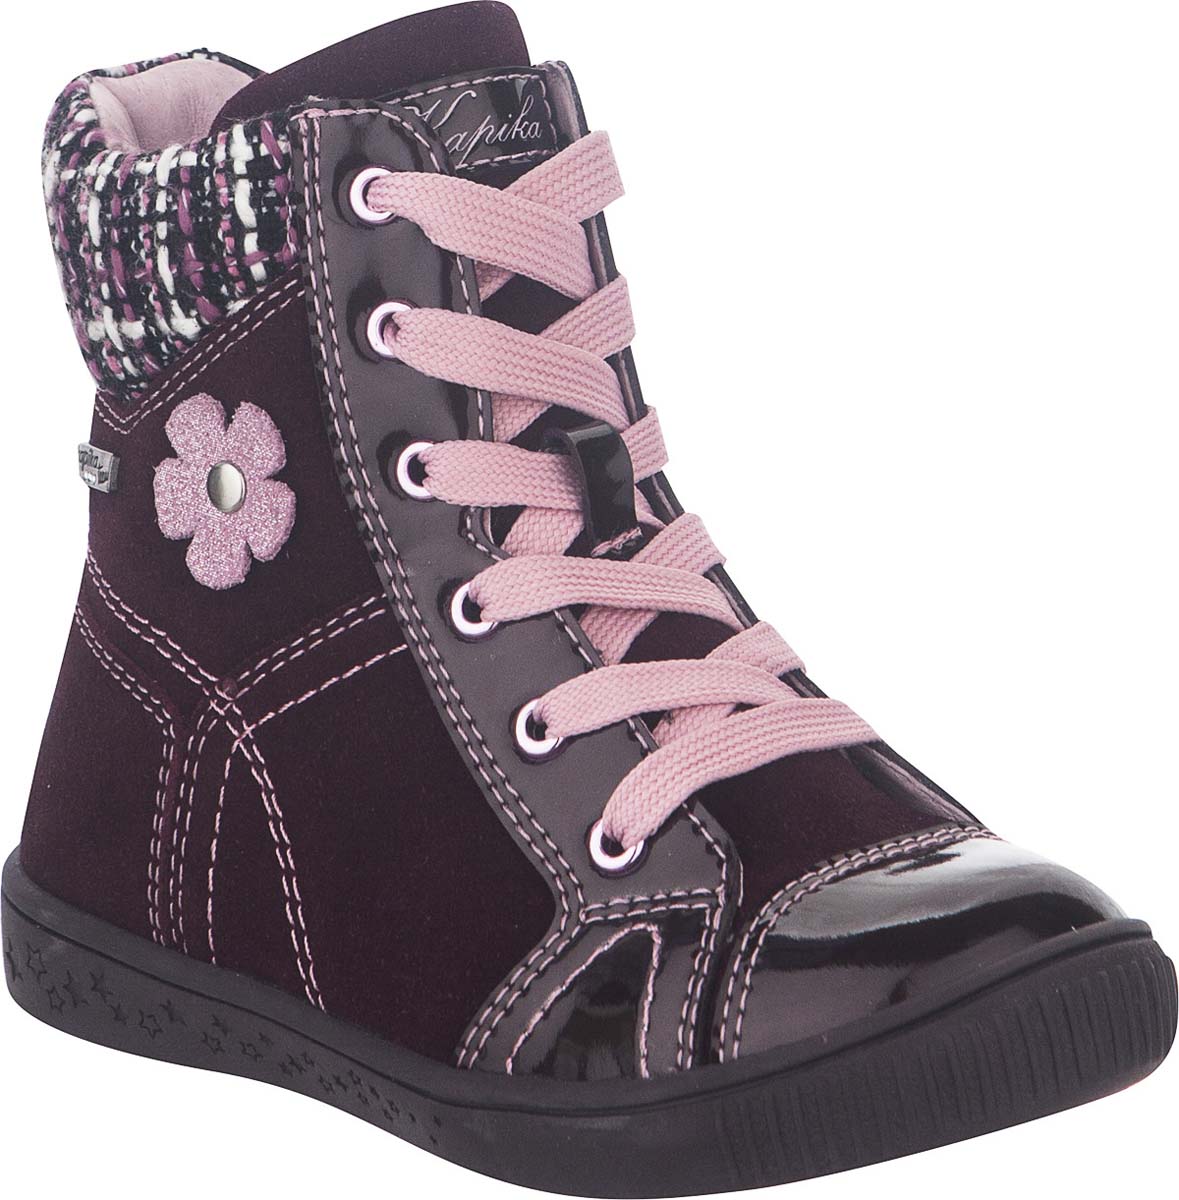 Ботинки для девочки Kapika, цвет: фиолетовый. 52266ук-2. Размер 27